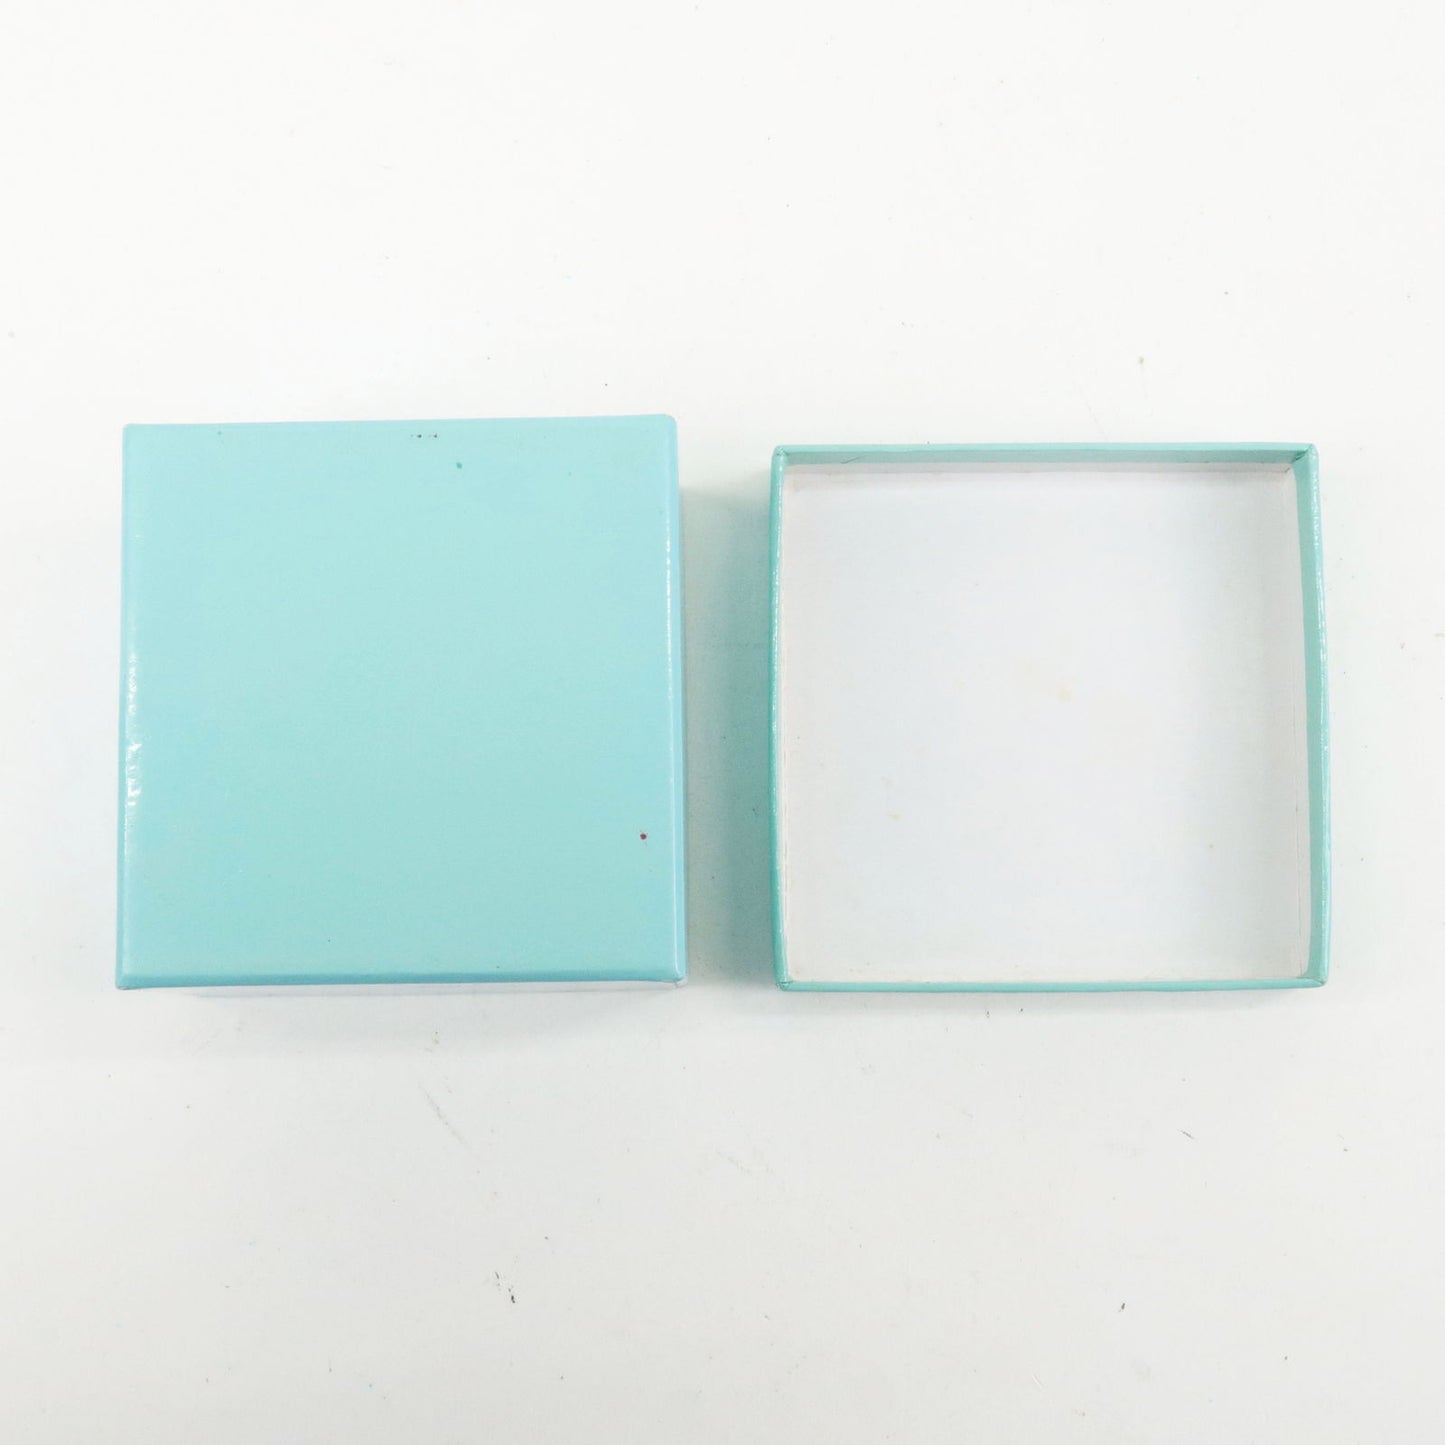 Tiffany&Co. Set of 2 Jewelry Box Ring Box Tiffany Blue